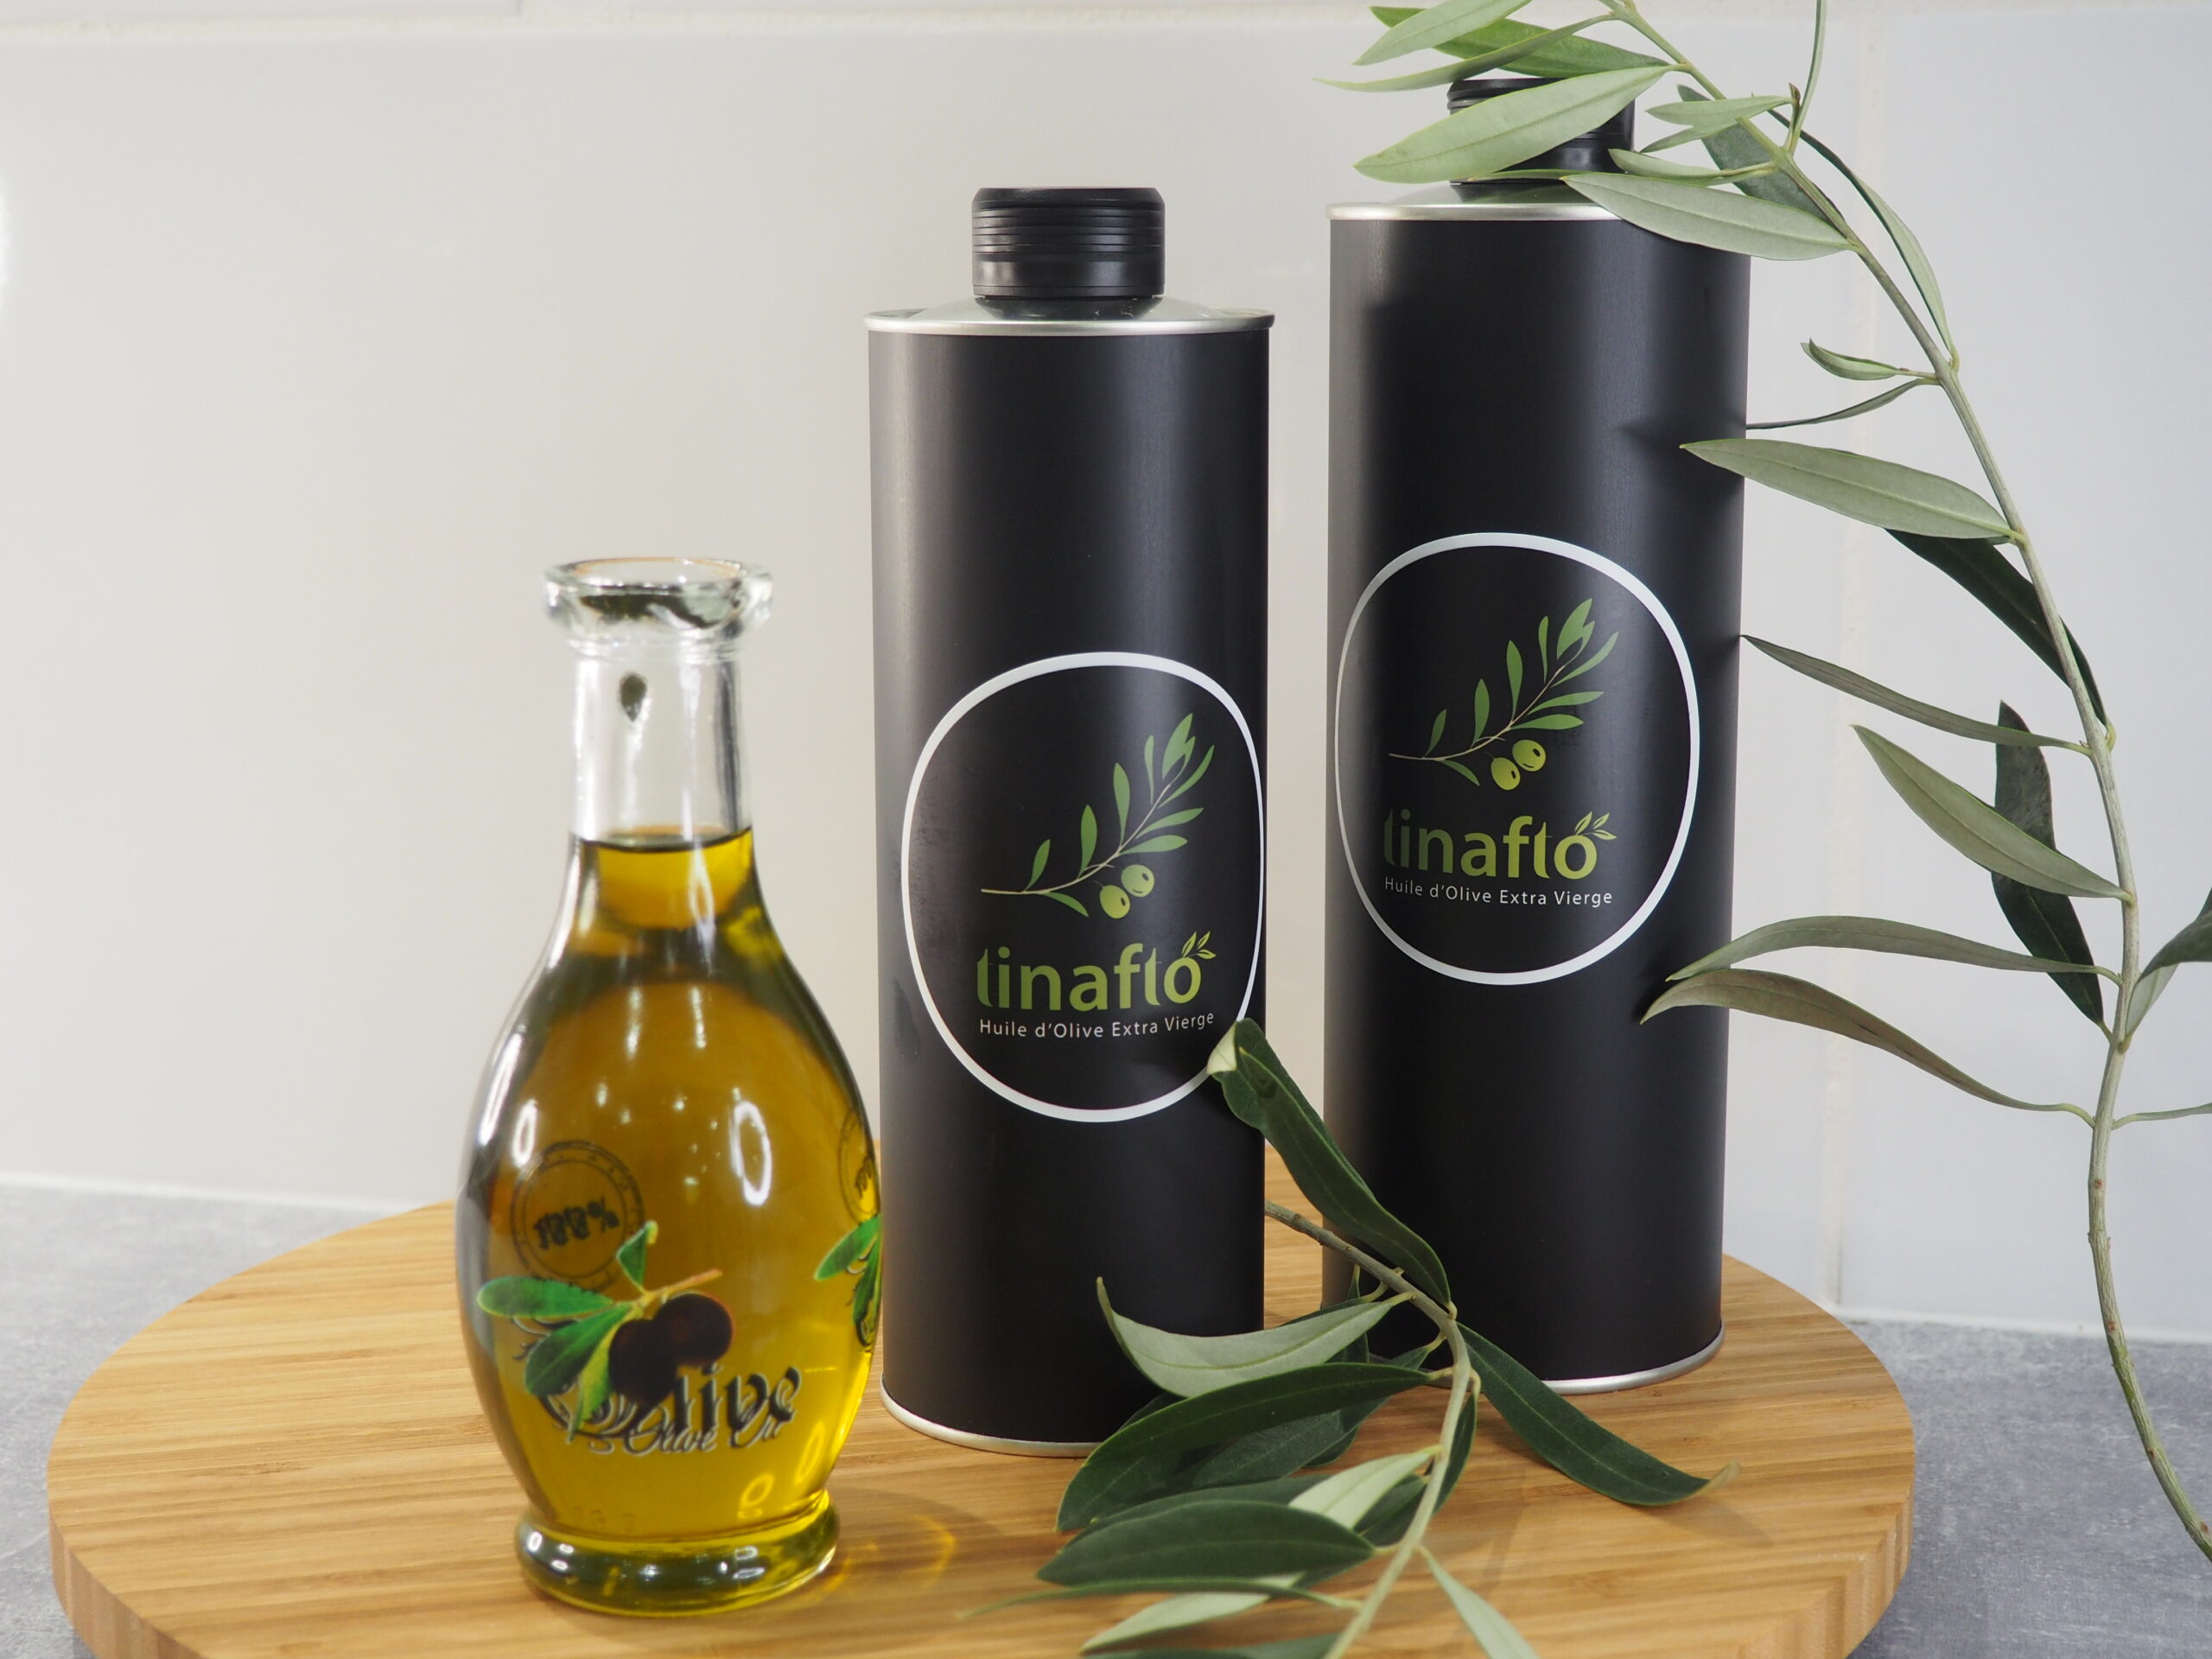 Huile d'olive vierge extra Grèce bouteille 75cl - bio - Ethique et